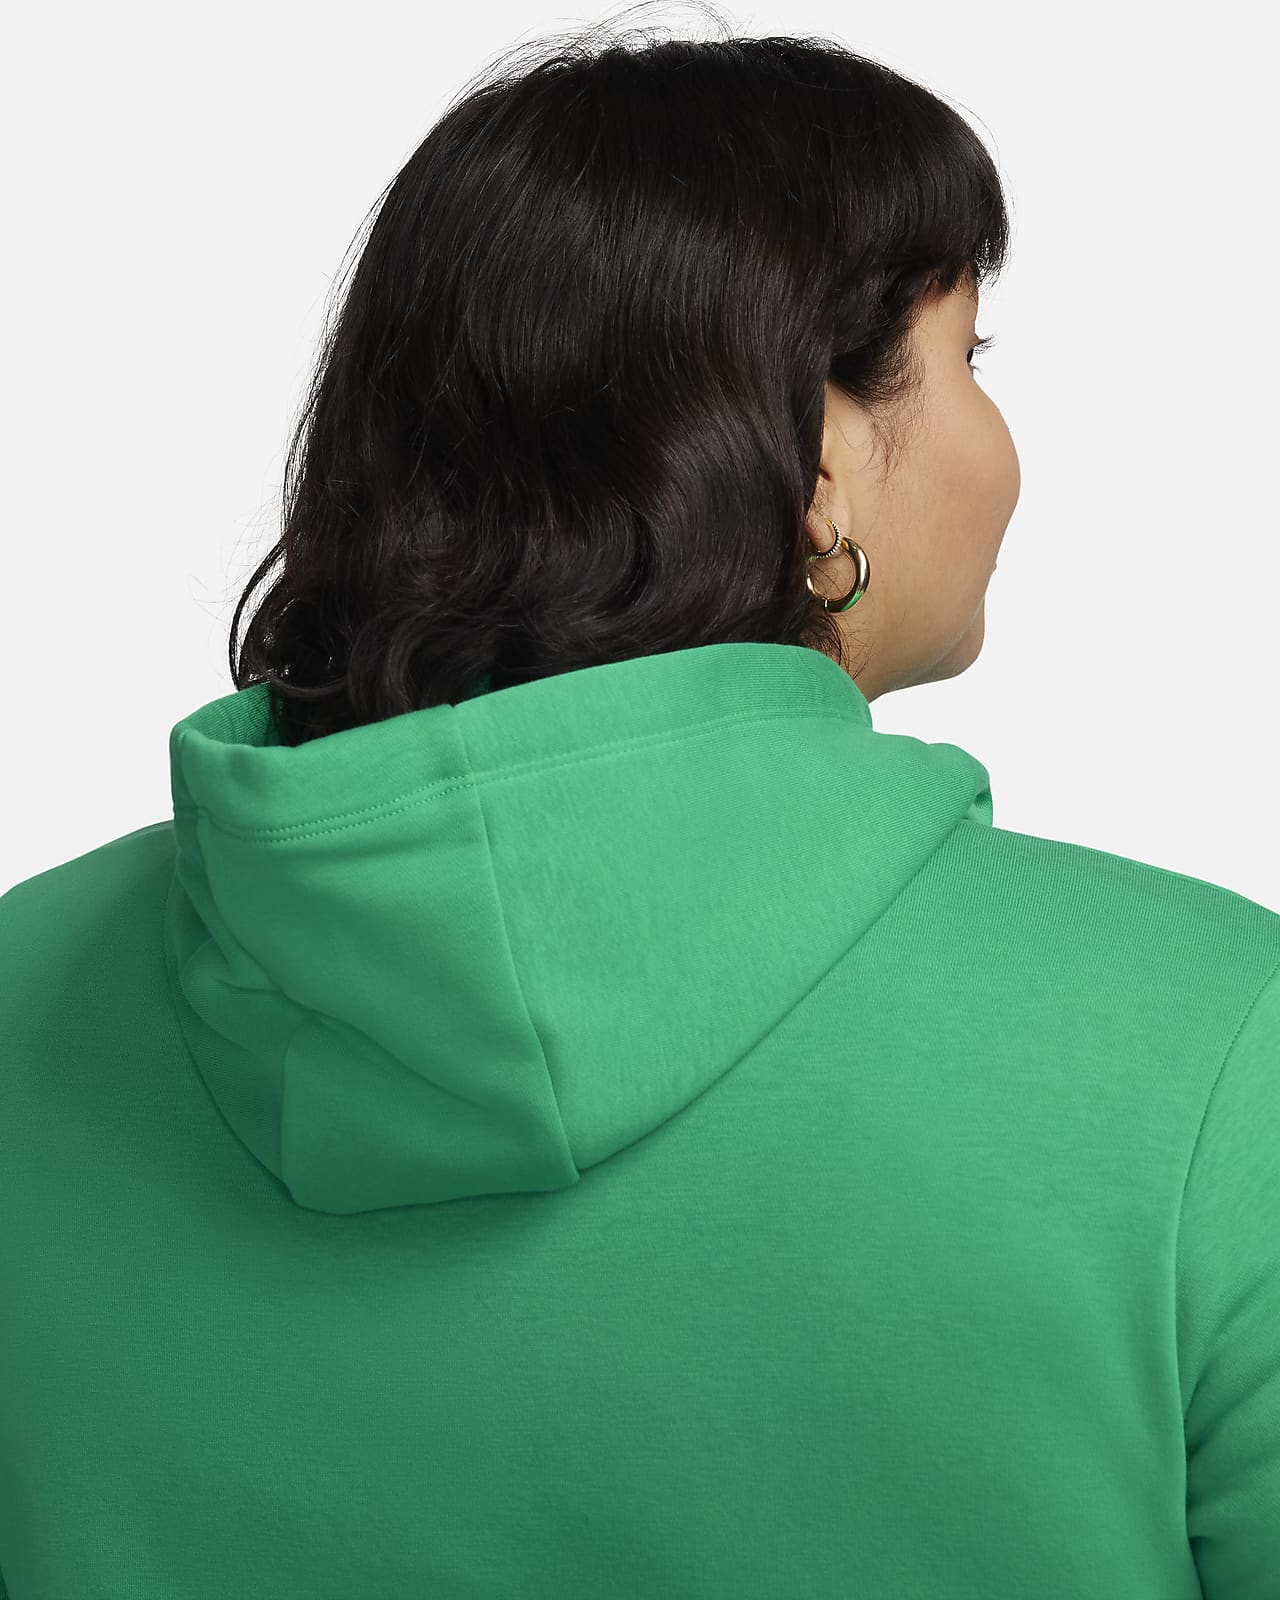 Nike Womens Sportswear Essential Fleece Pullover Hoodie (Plus Size